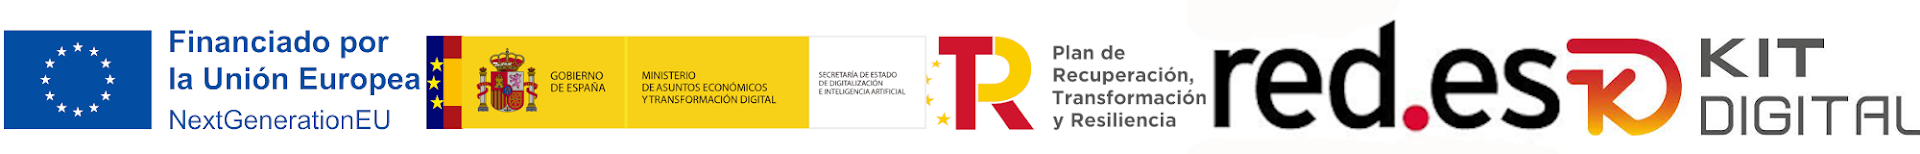 Logotipo Financiado por la Unión Europea, Plan de Recuperación, Transformación y Resiliencia, red.es y Kit Digital